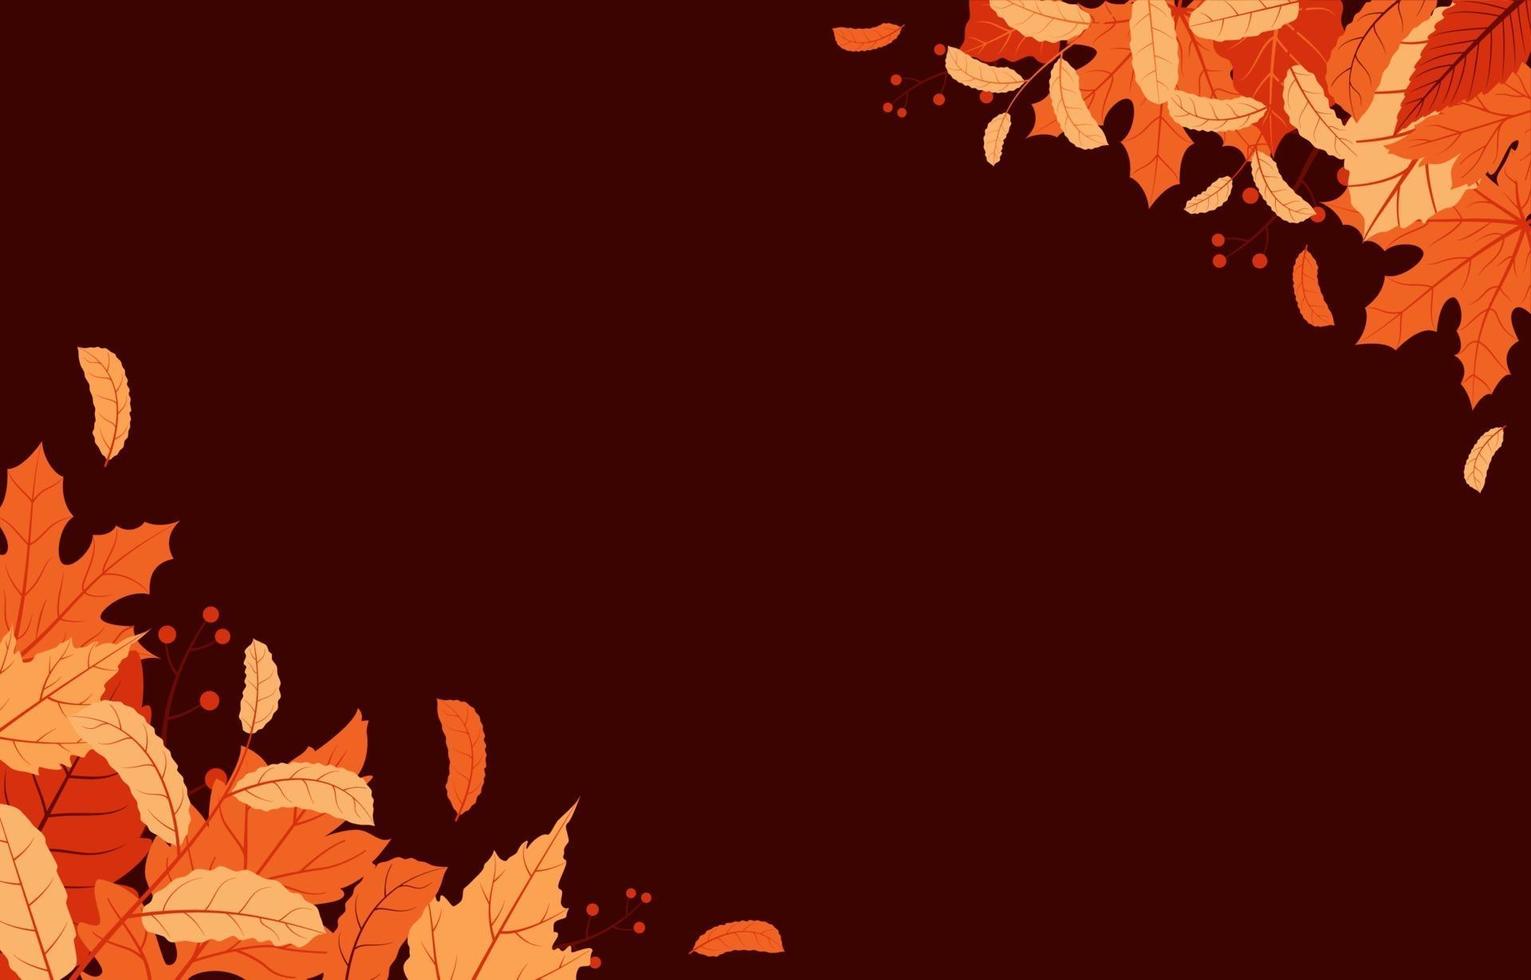 Fondo de temporada de otoño con hojas rojas y amarillas. vector